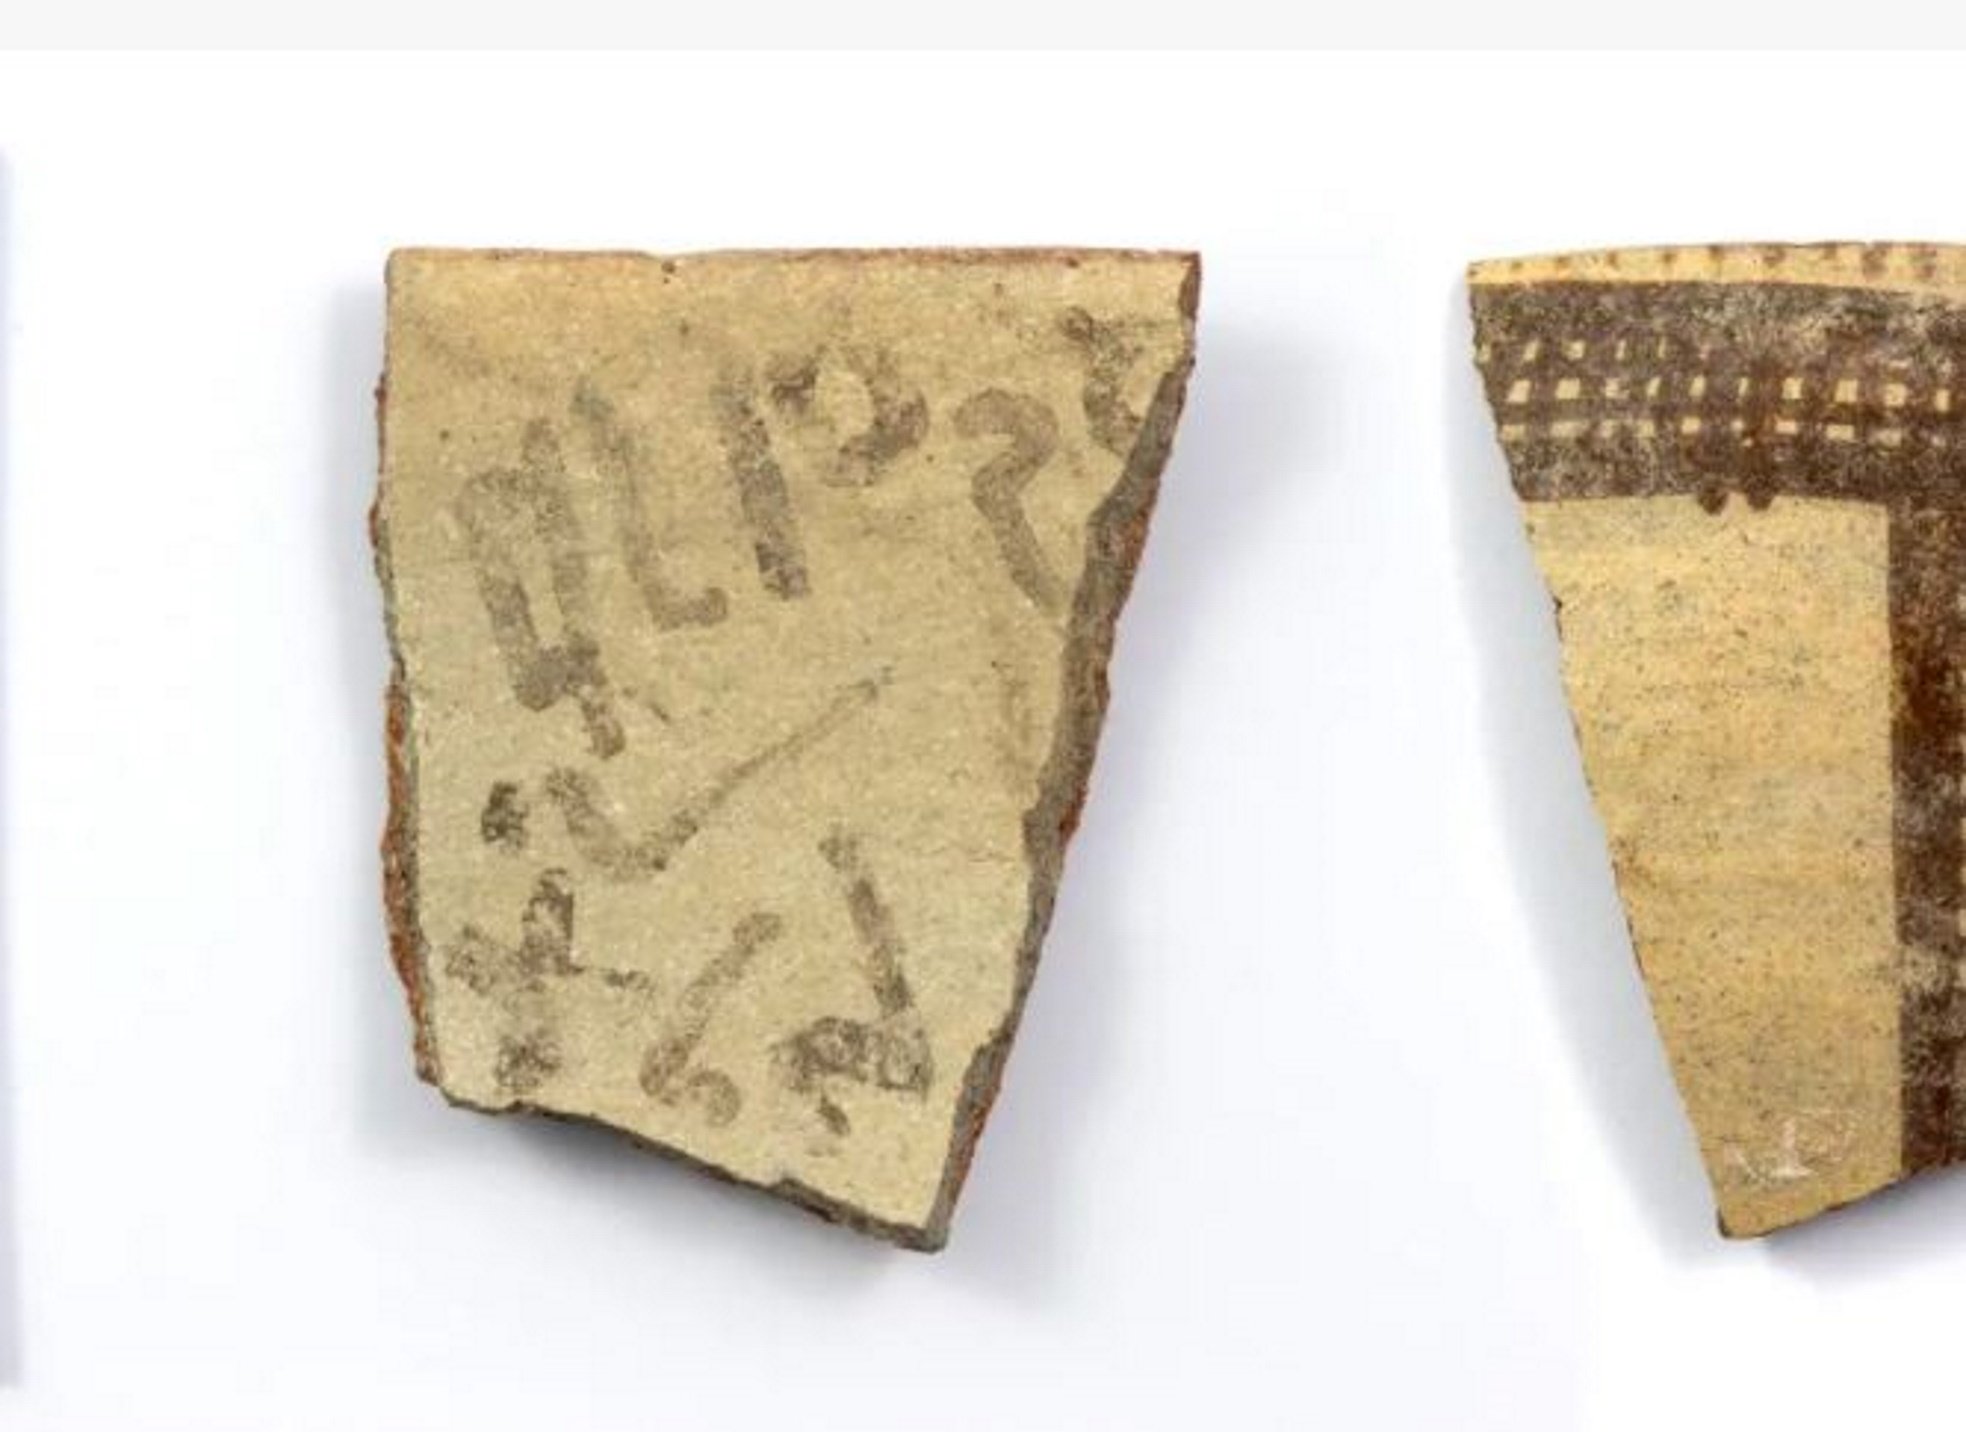 Descubren uno de los primeros rastros de escritura alfabética, de 3.500 años